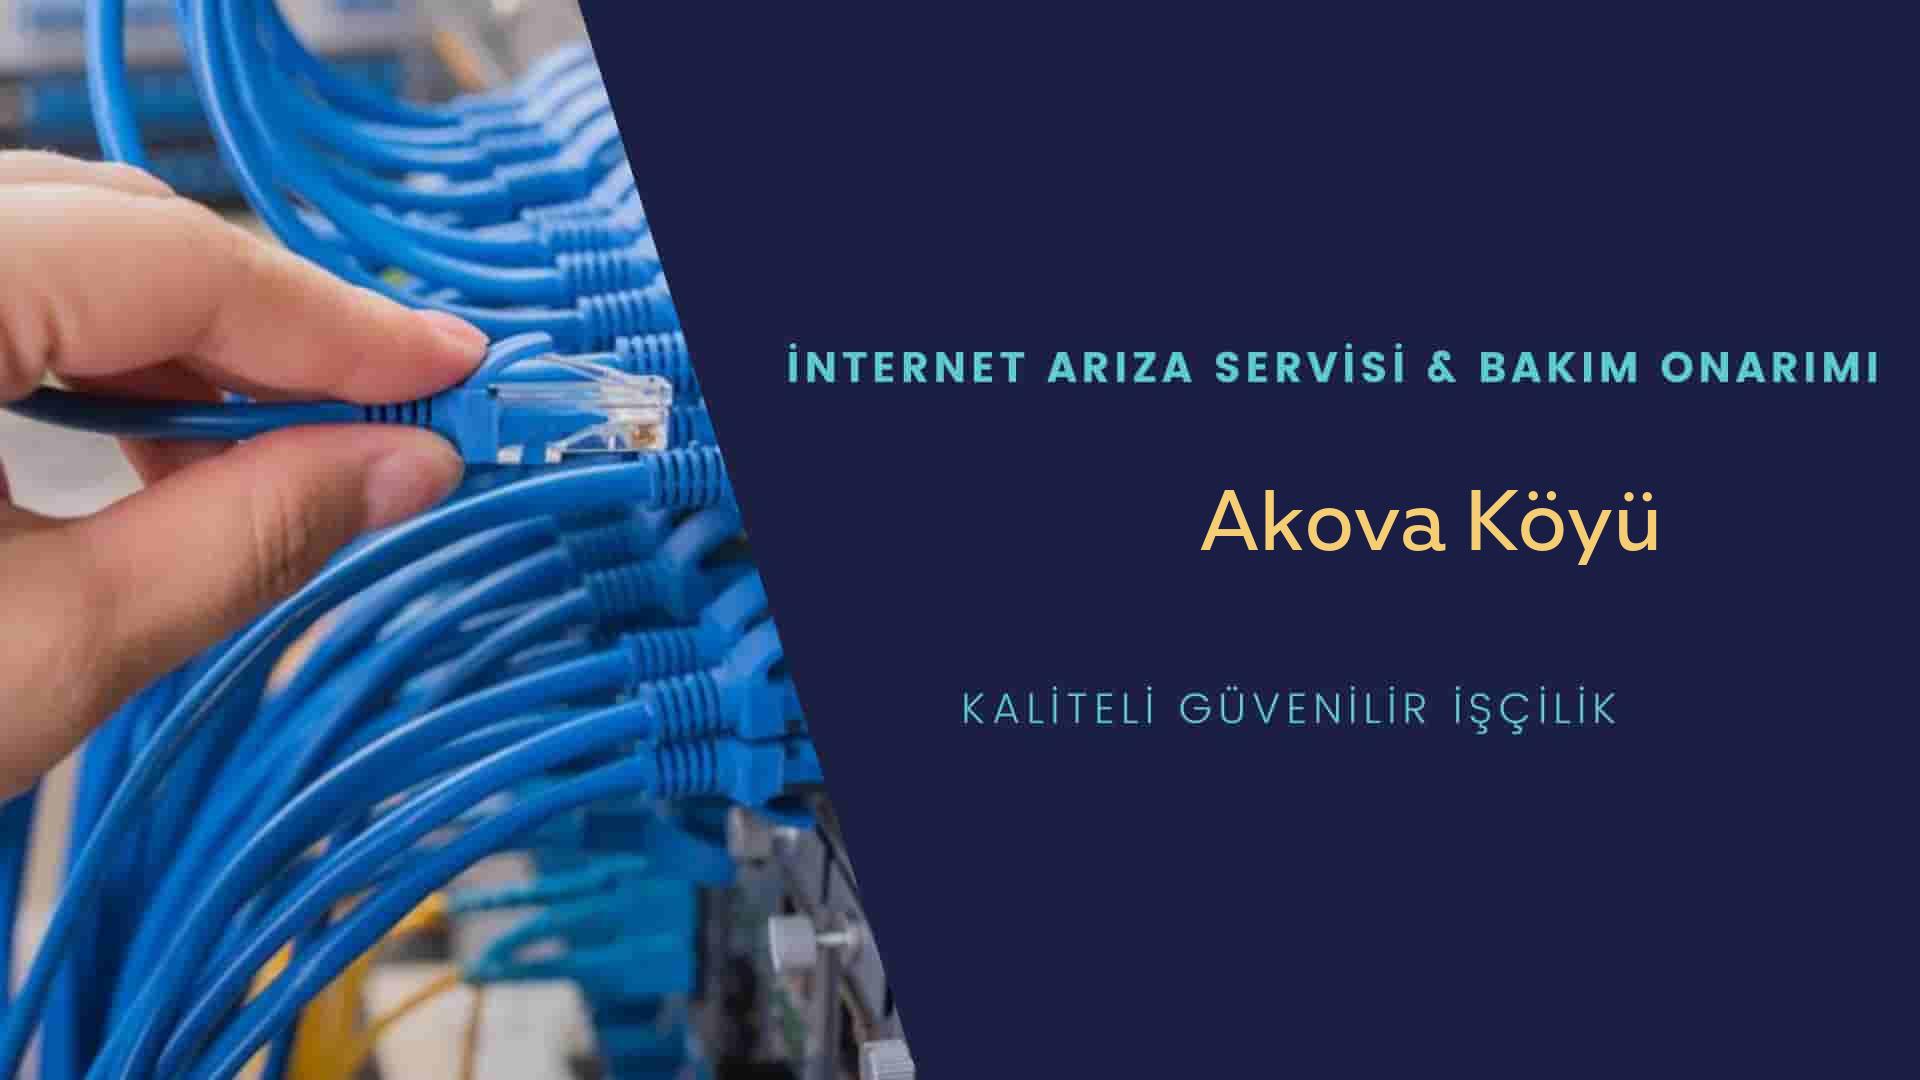 Akova Köyü internet kablosu çekimi yapan yerler veya elektrikçiler mi? arıyorsunuz doğru yerdesiniz o zaman sizlere 7/24 yardımcı olacak profesyonel ustalarımız bir telefon kadar yakındır size.